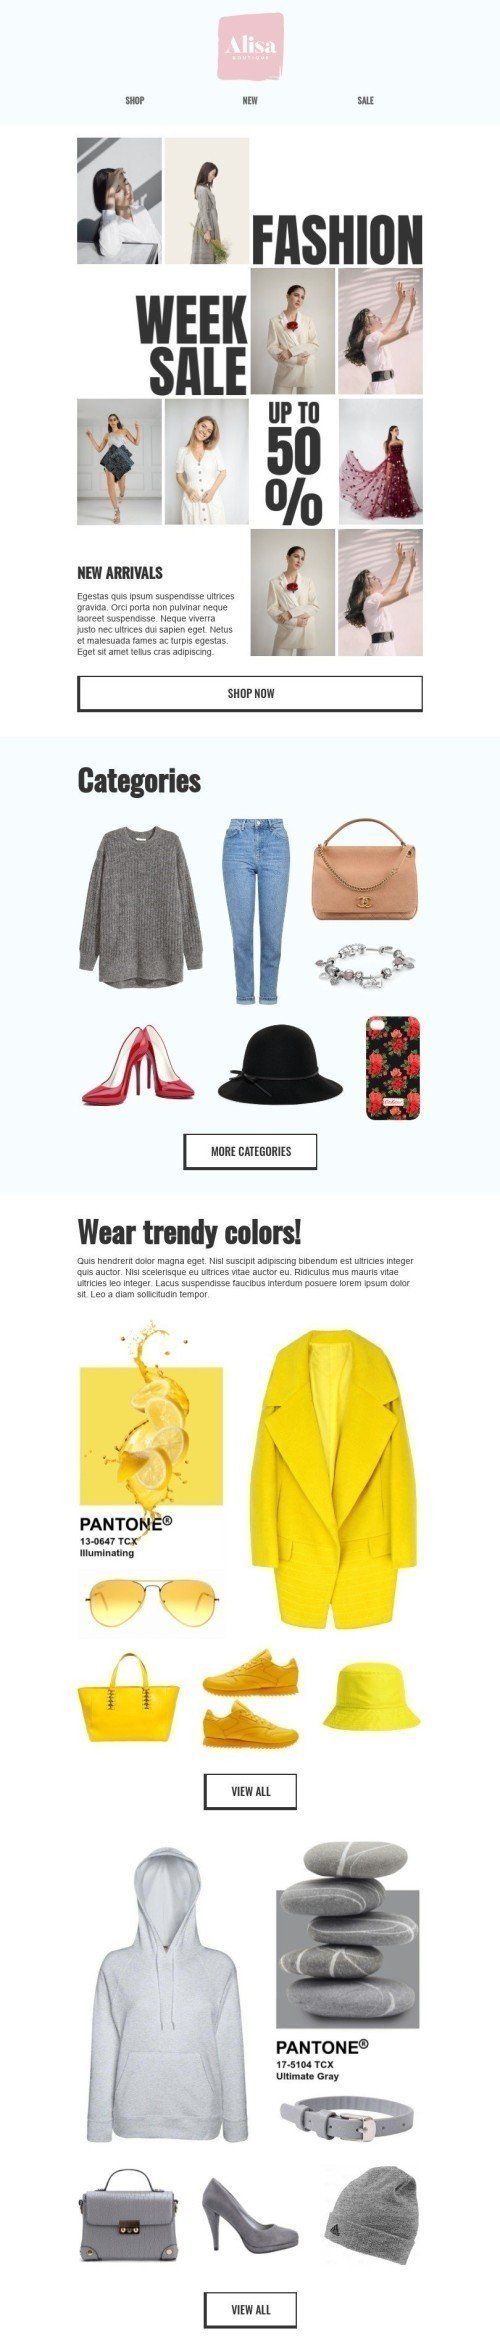 Mode Week E-Mail-Vorlage «Fashion Week Sale» für Mode-Branche Desktop-Ansicht